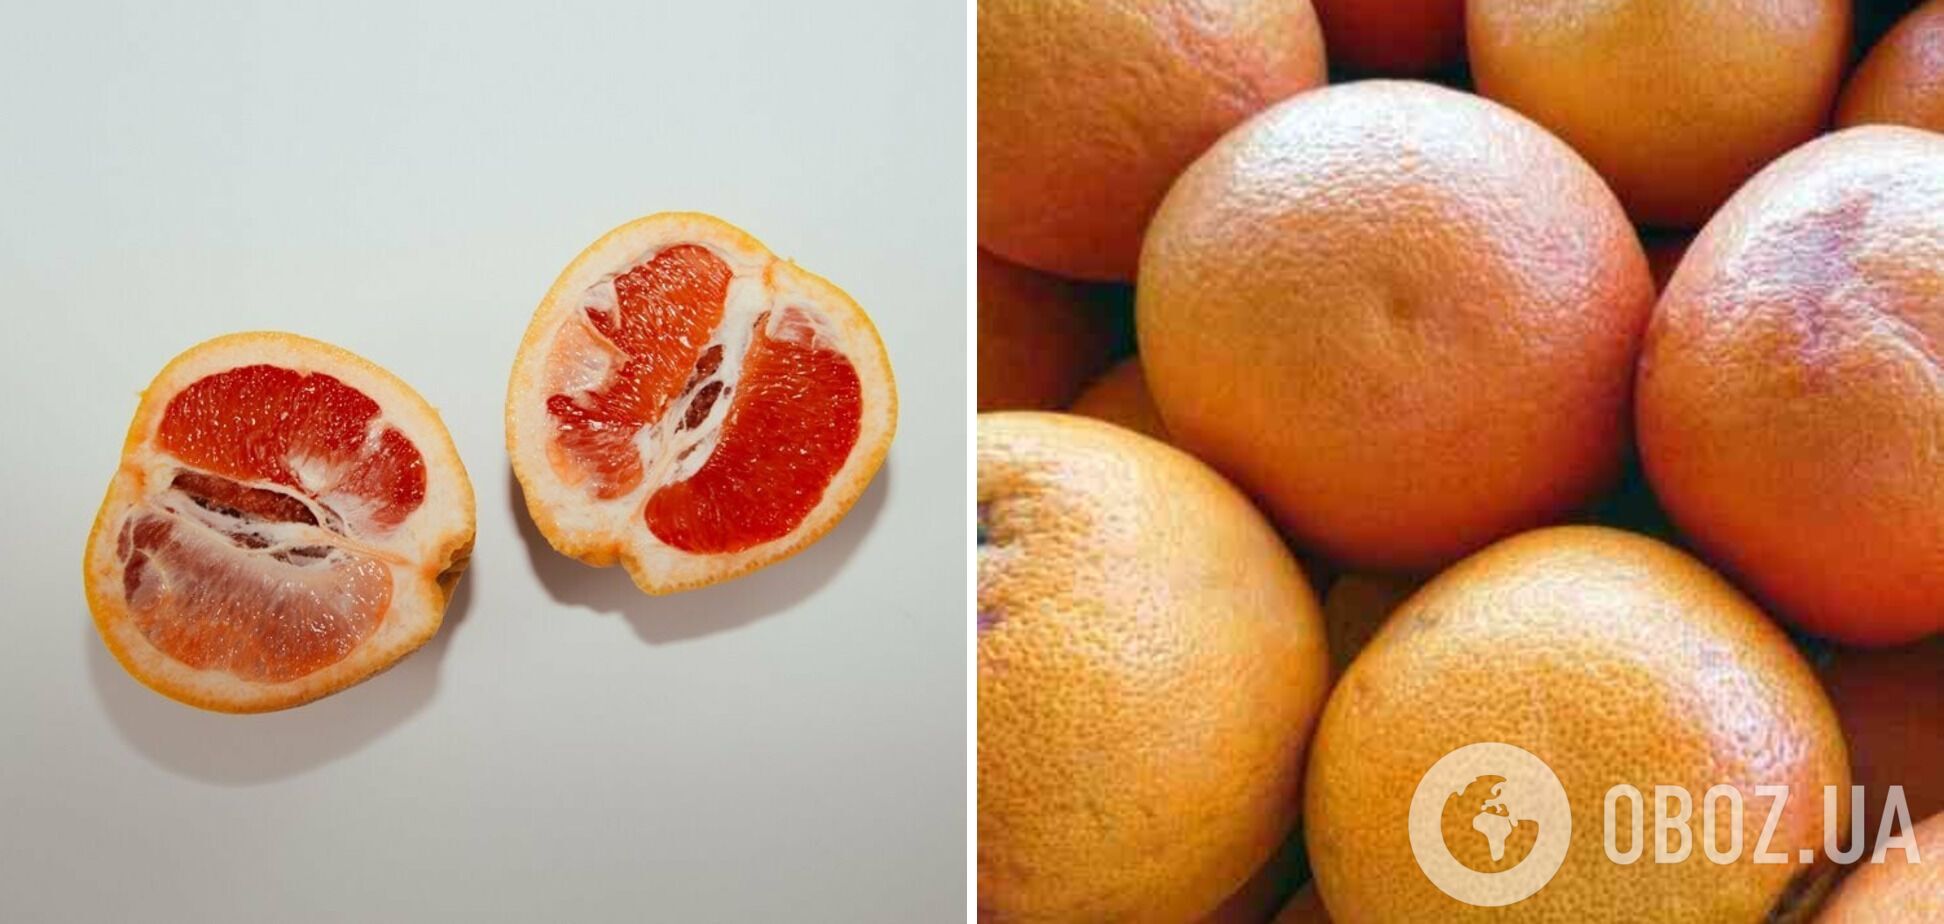 Спелый грейпфрут имеет насыщенный цвет и равномерную форму